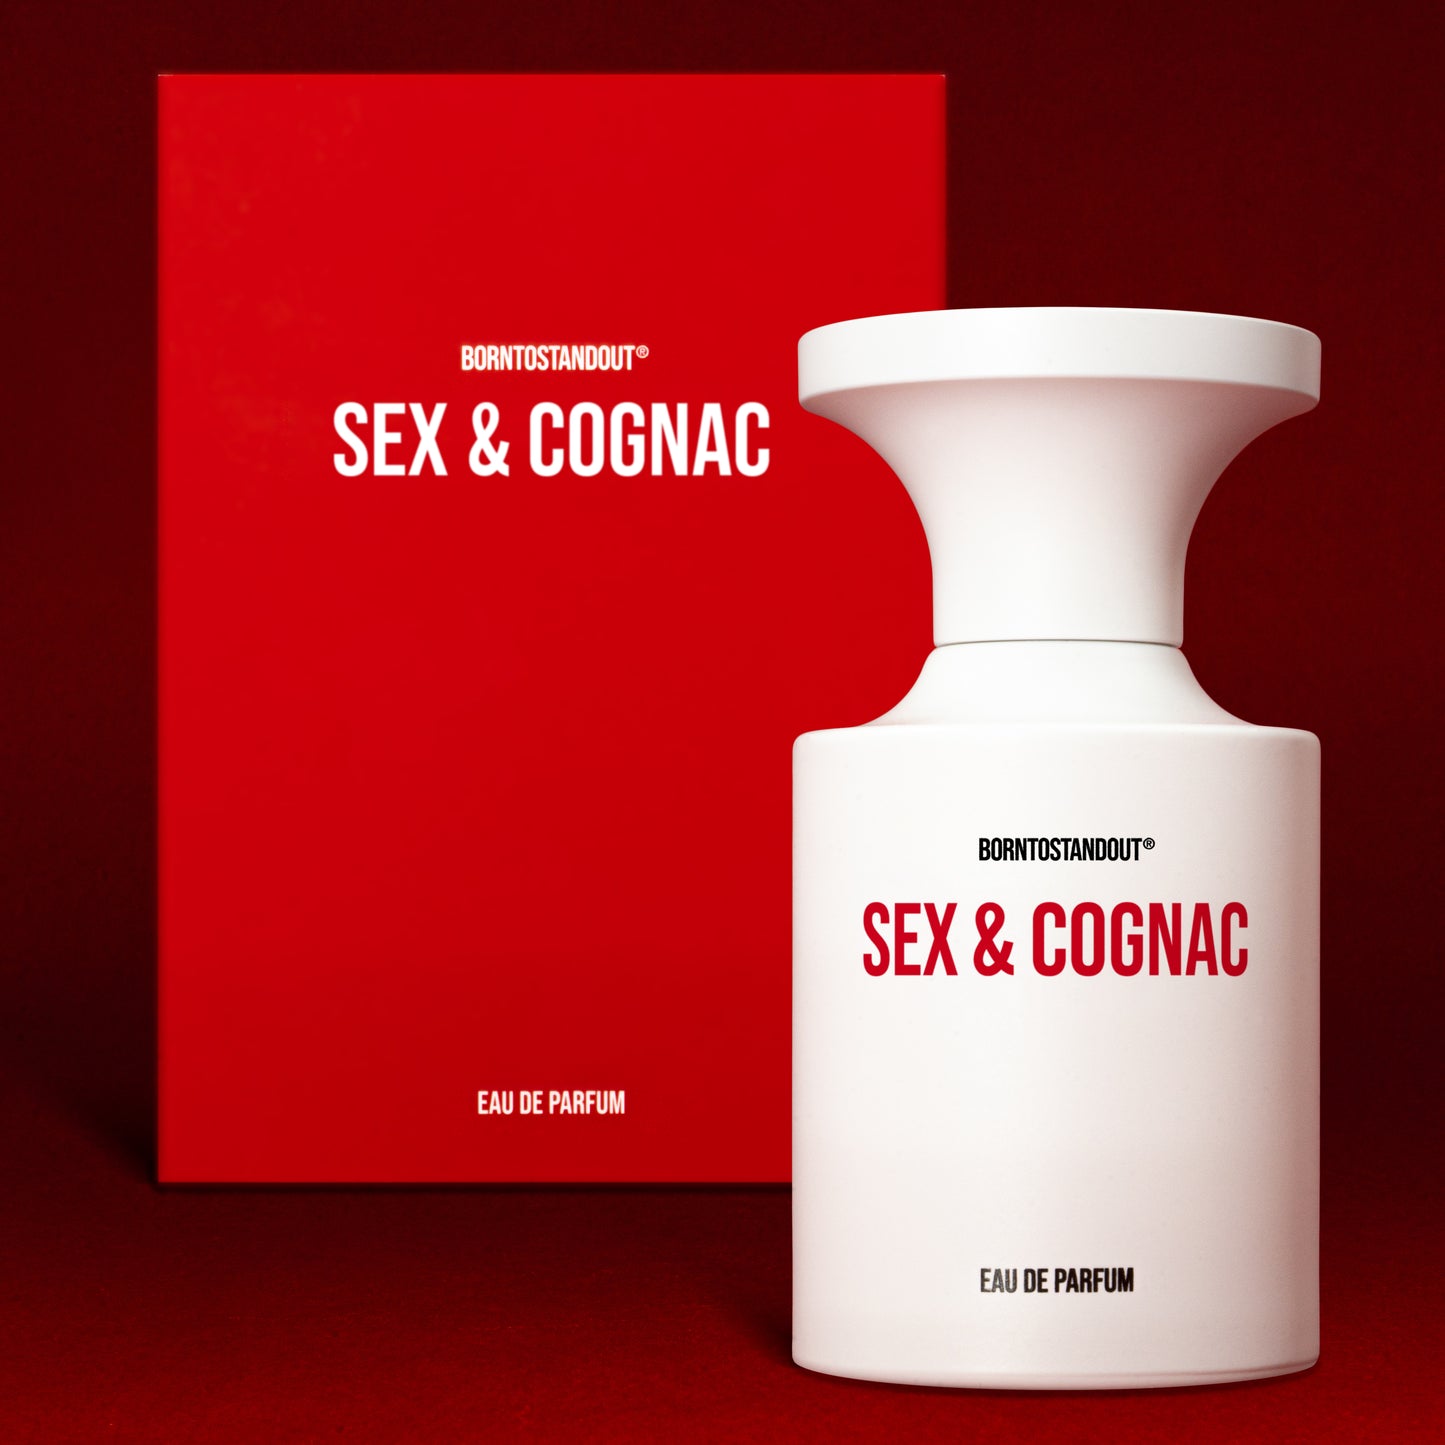 SEX & COGNAC